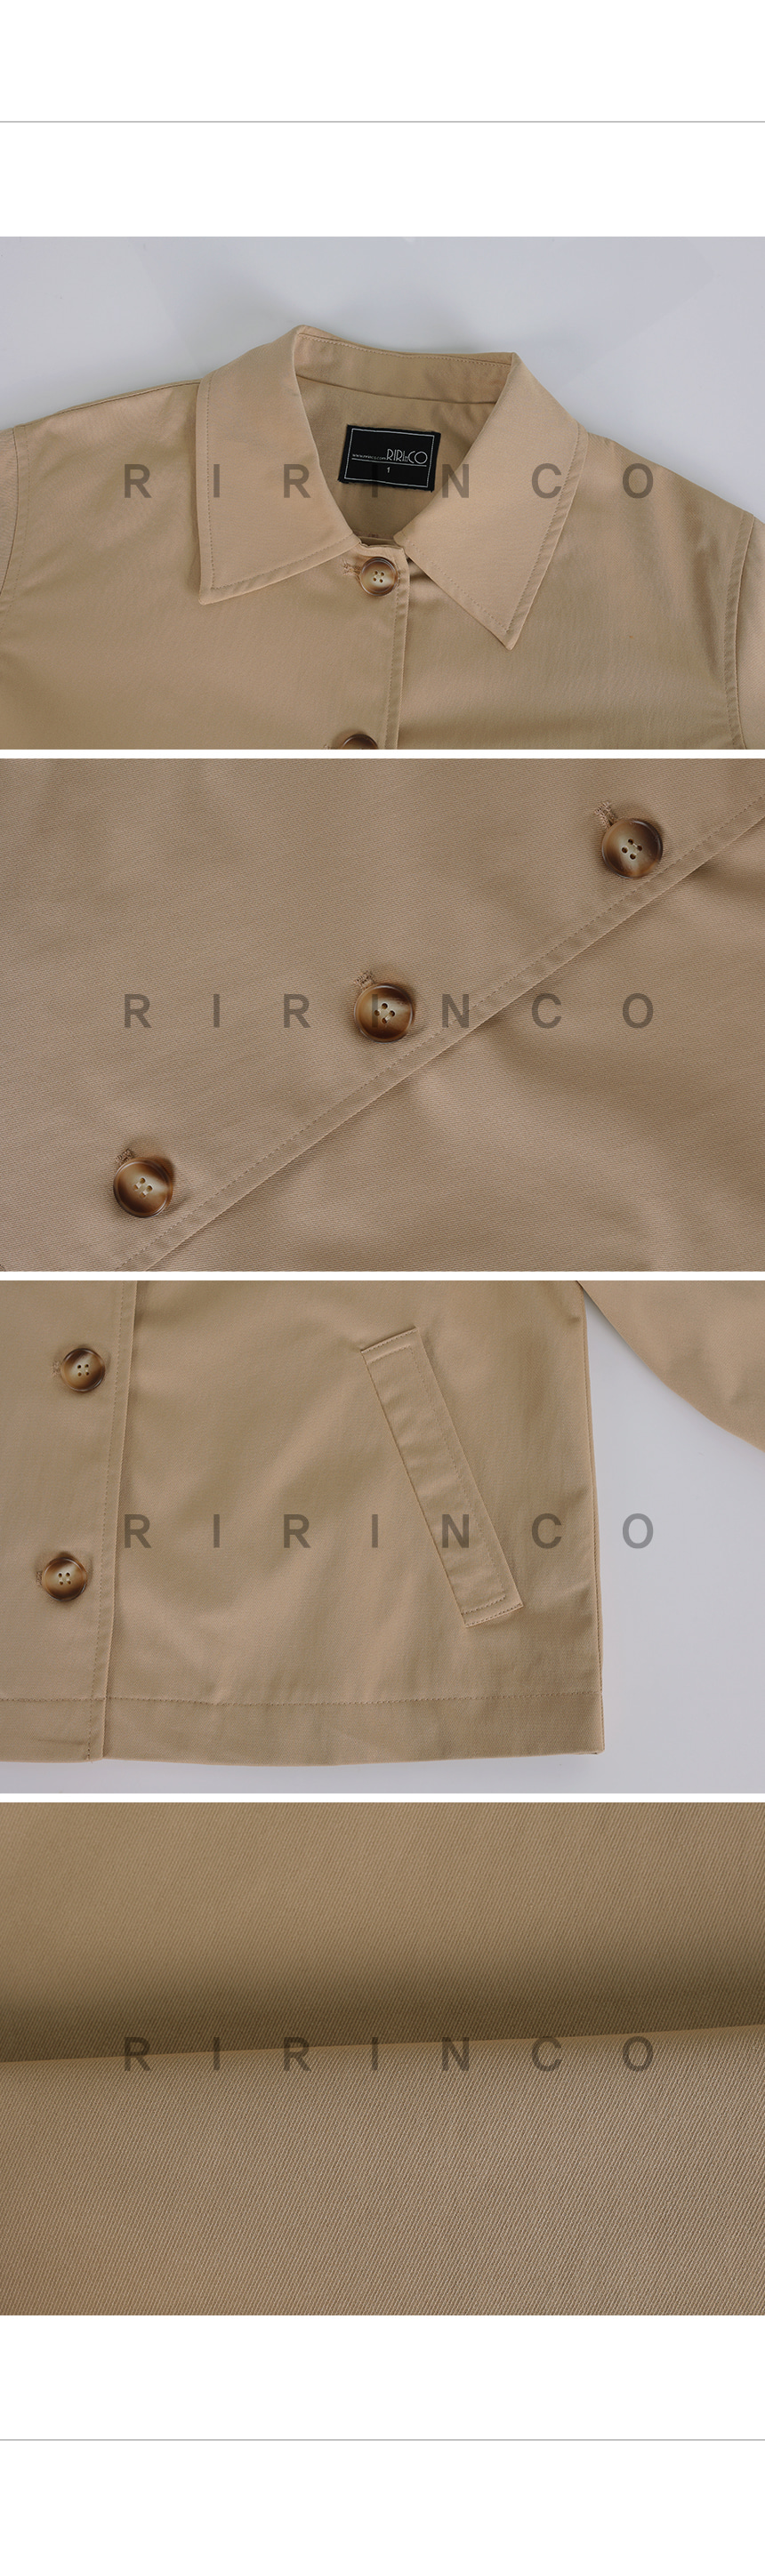 RIRINCO カラーネックボタンジャケット